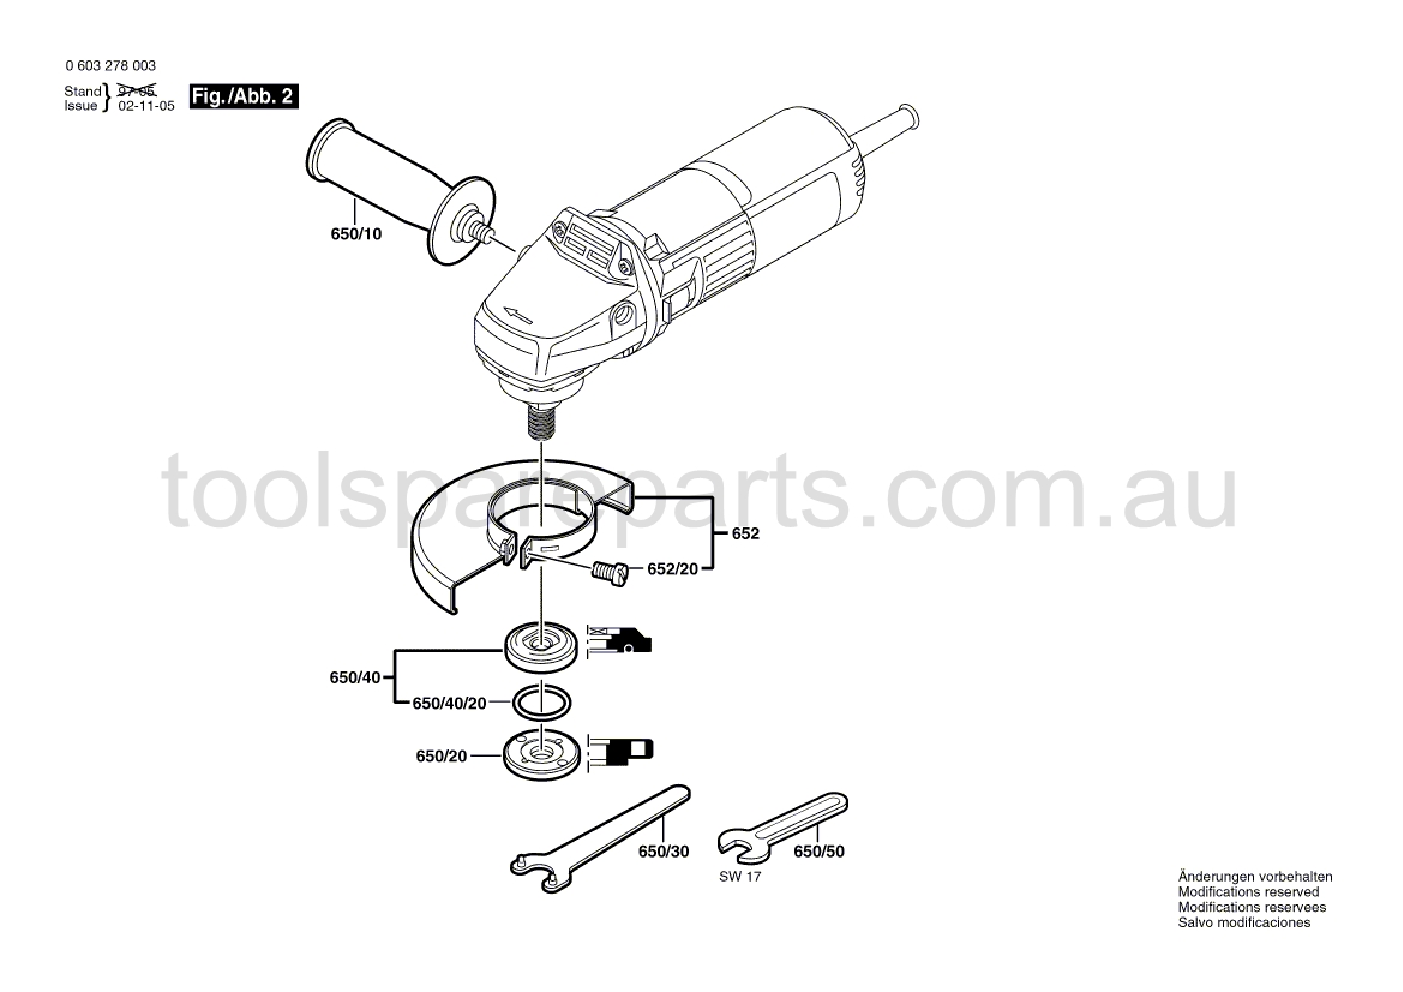 Bosch PWS 5-115 0603278037  Diagram 2